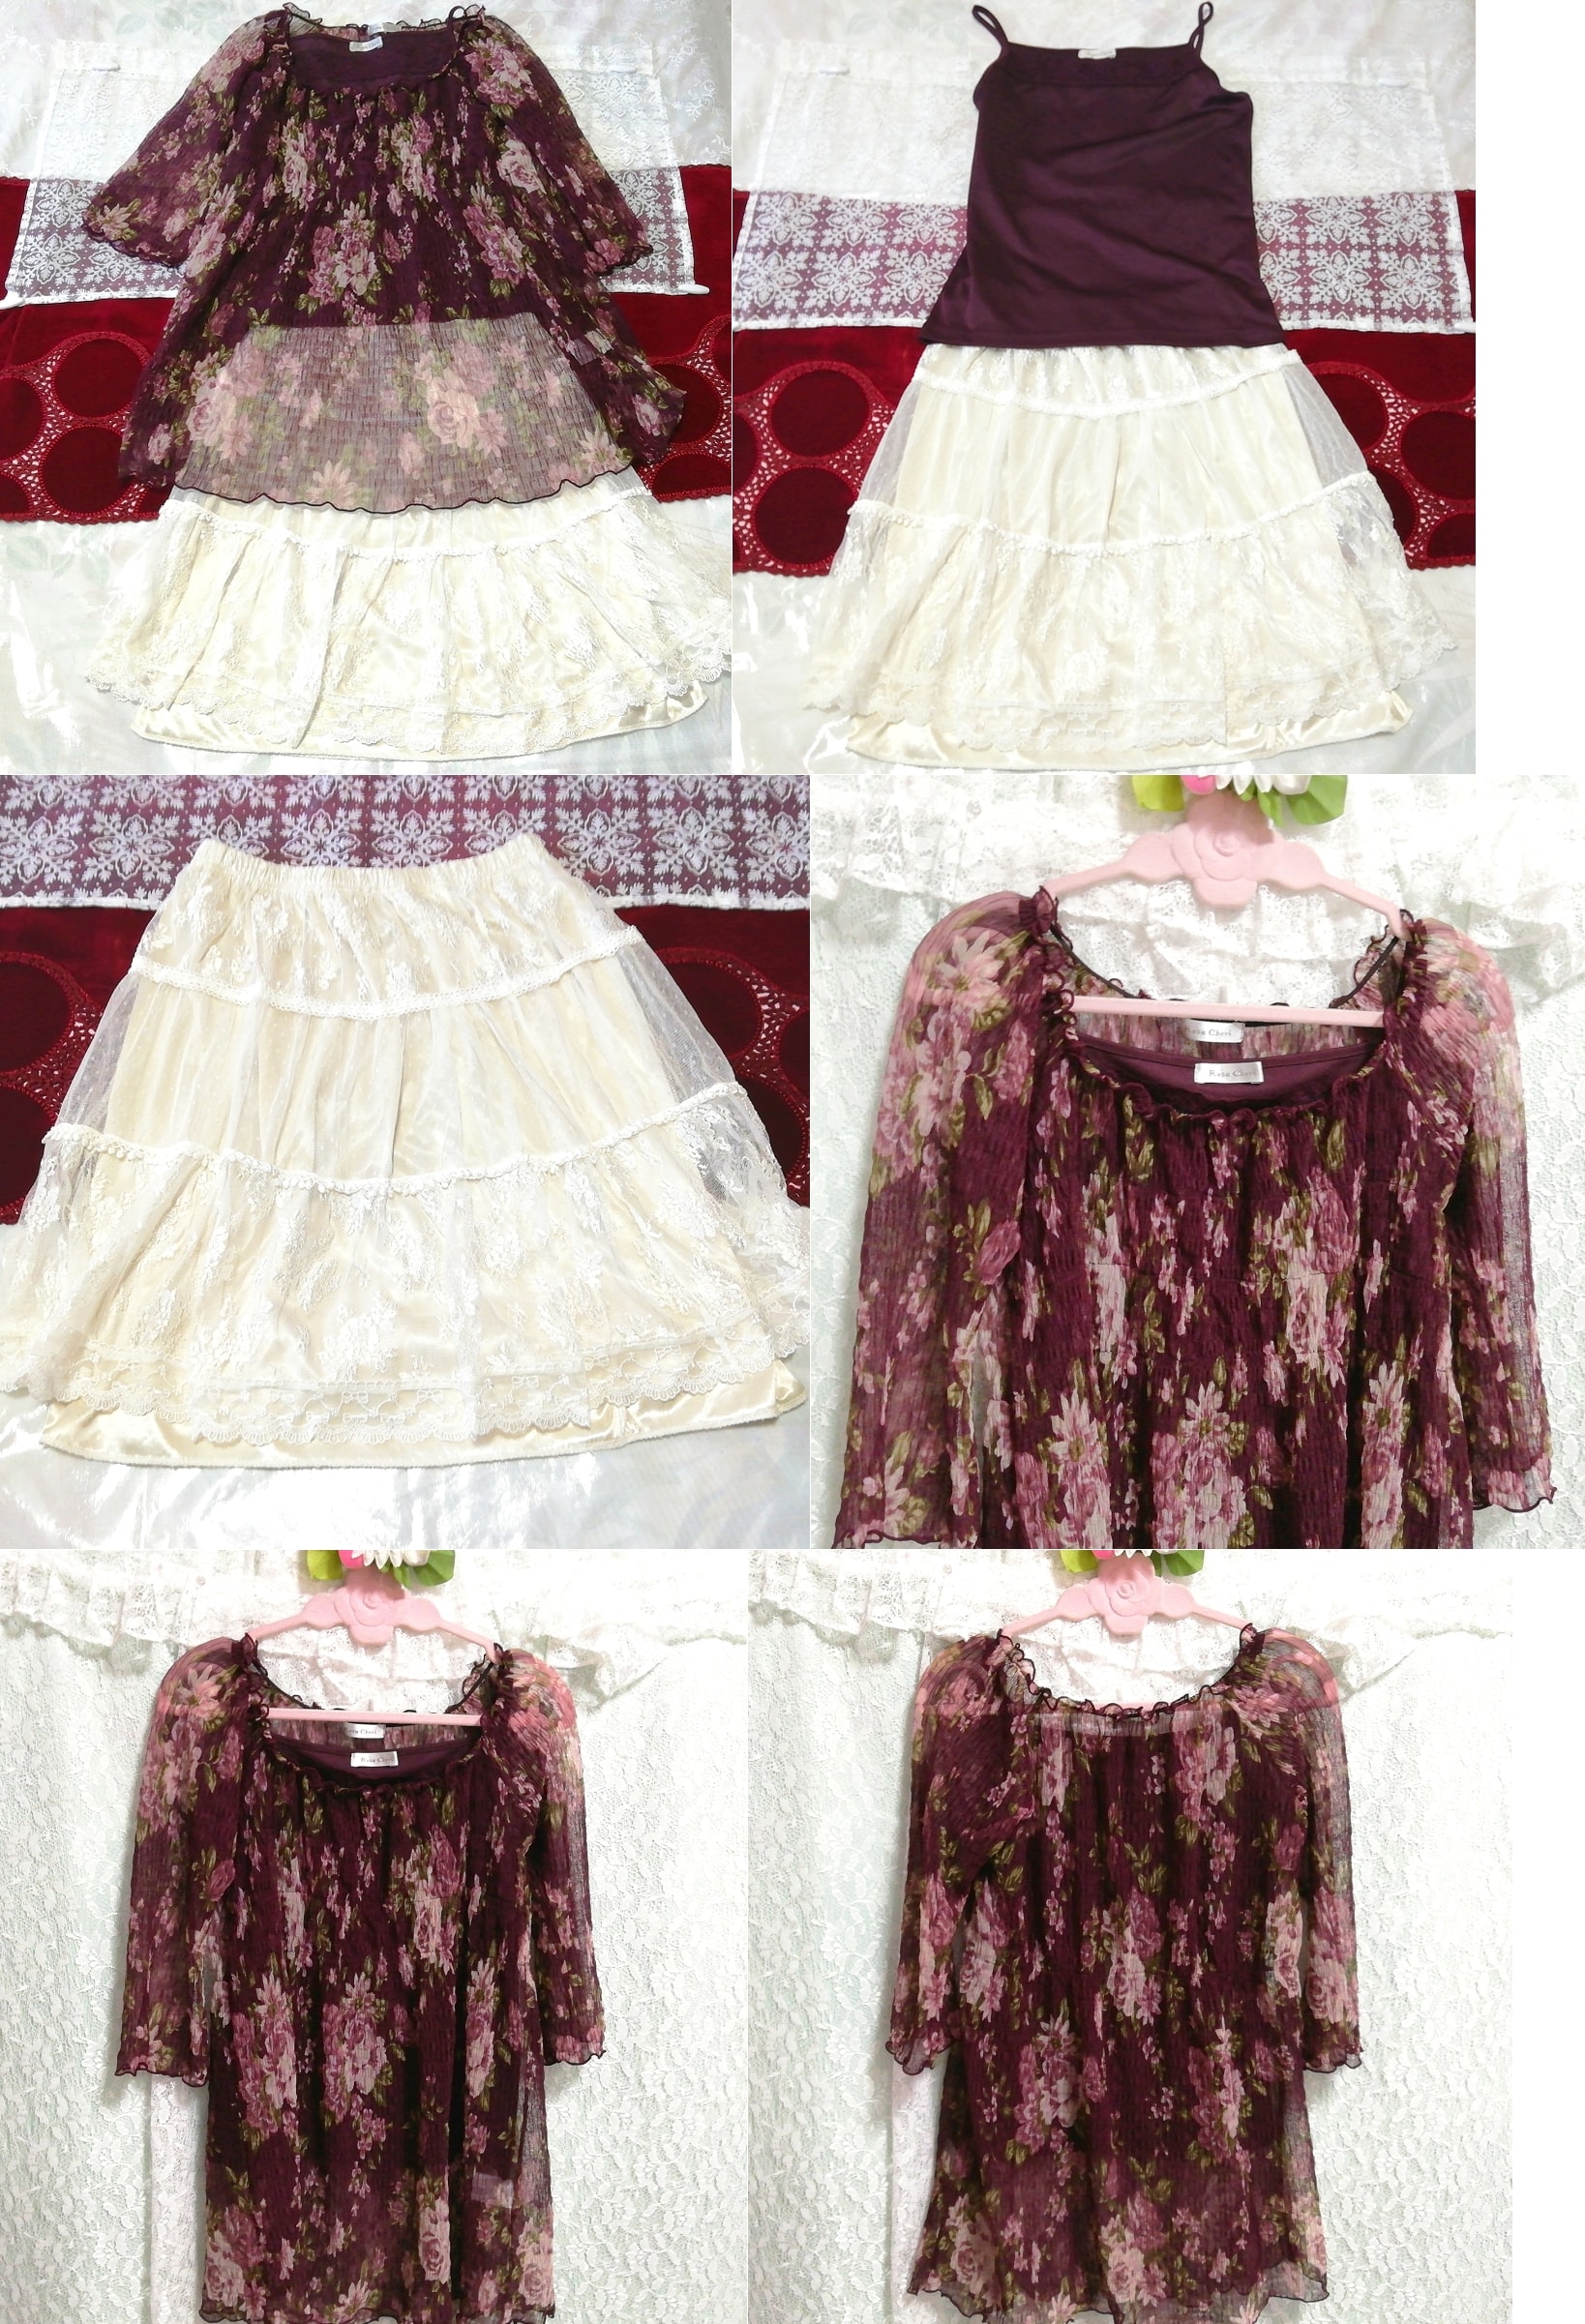 紫花柄シフォンシースルーチュニックキャミソール ネグリジェ 白スカート 2P Purple floral chiffon tunic camisole negligee white skirt, ファッション, レディースファッション, ナイトウエア、パジャマ